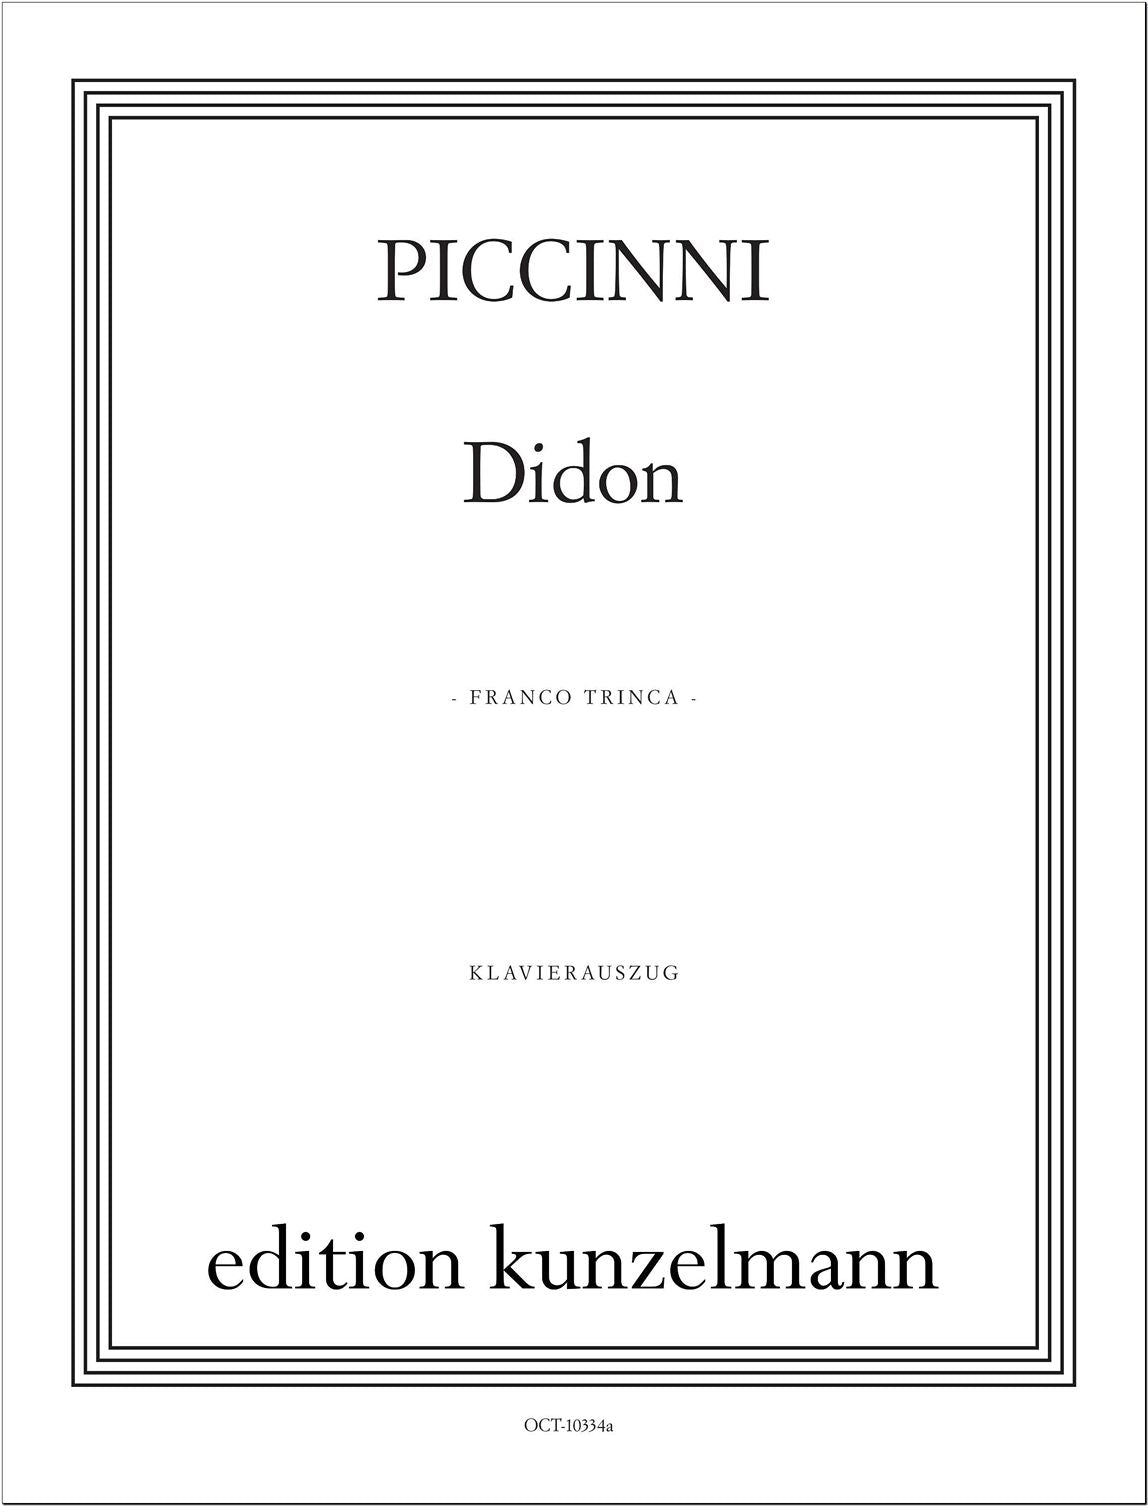 Piccinni: Didon